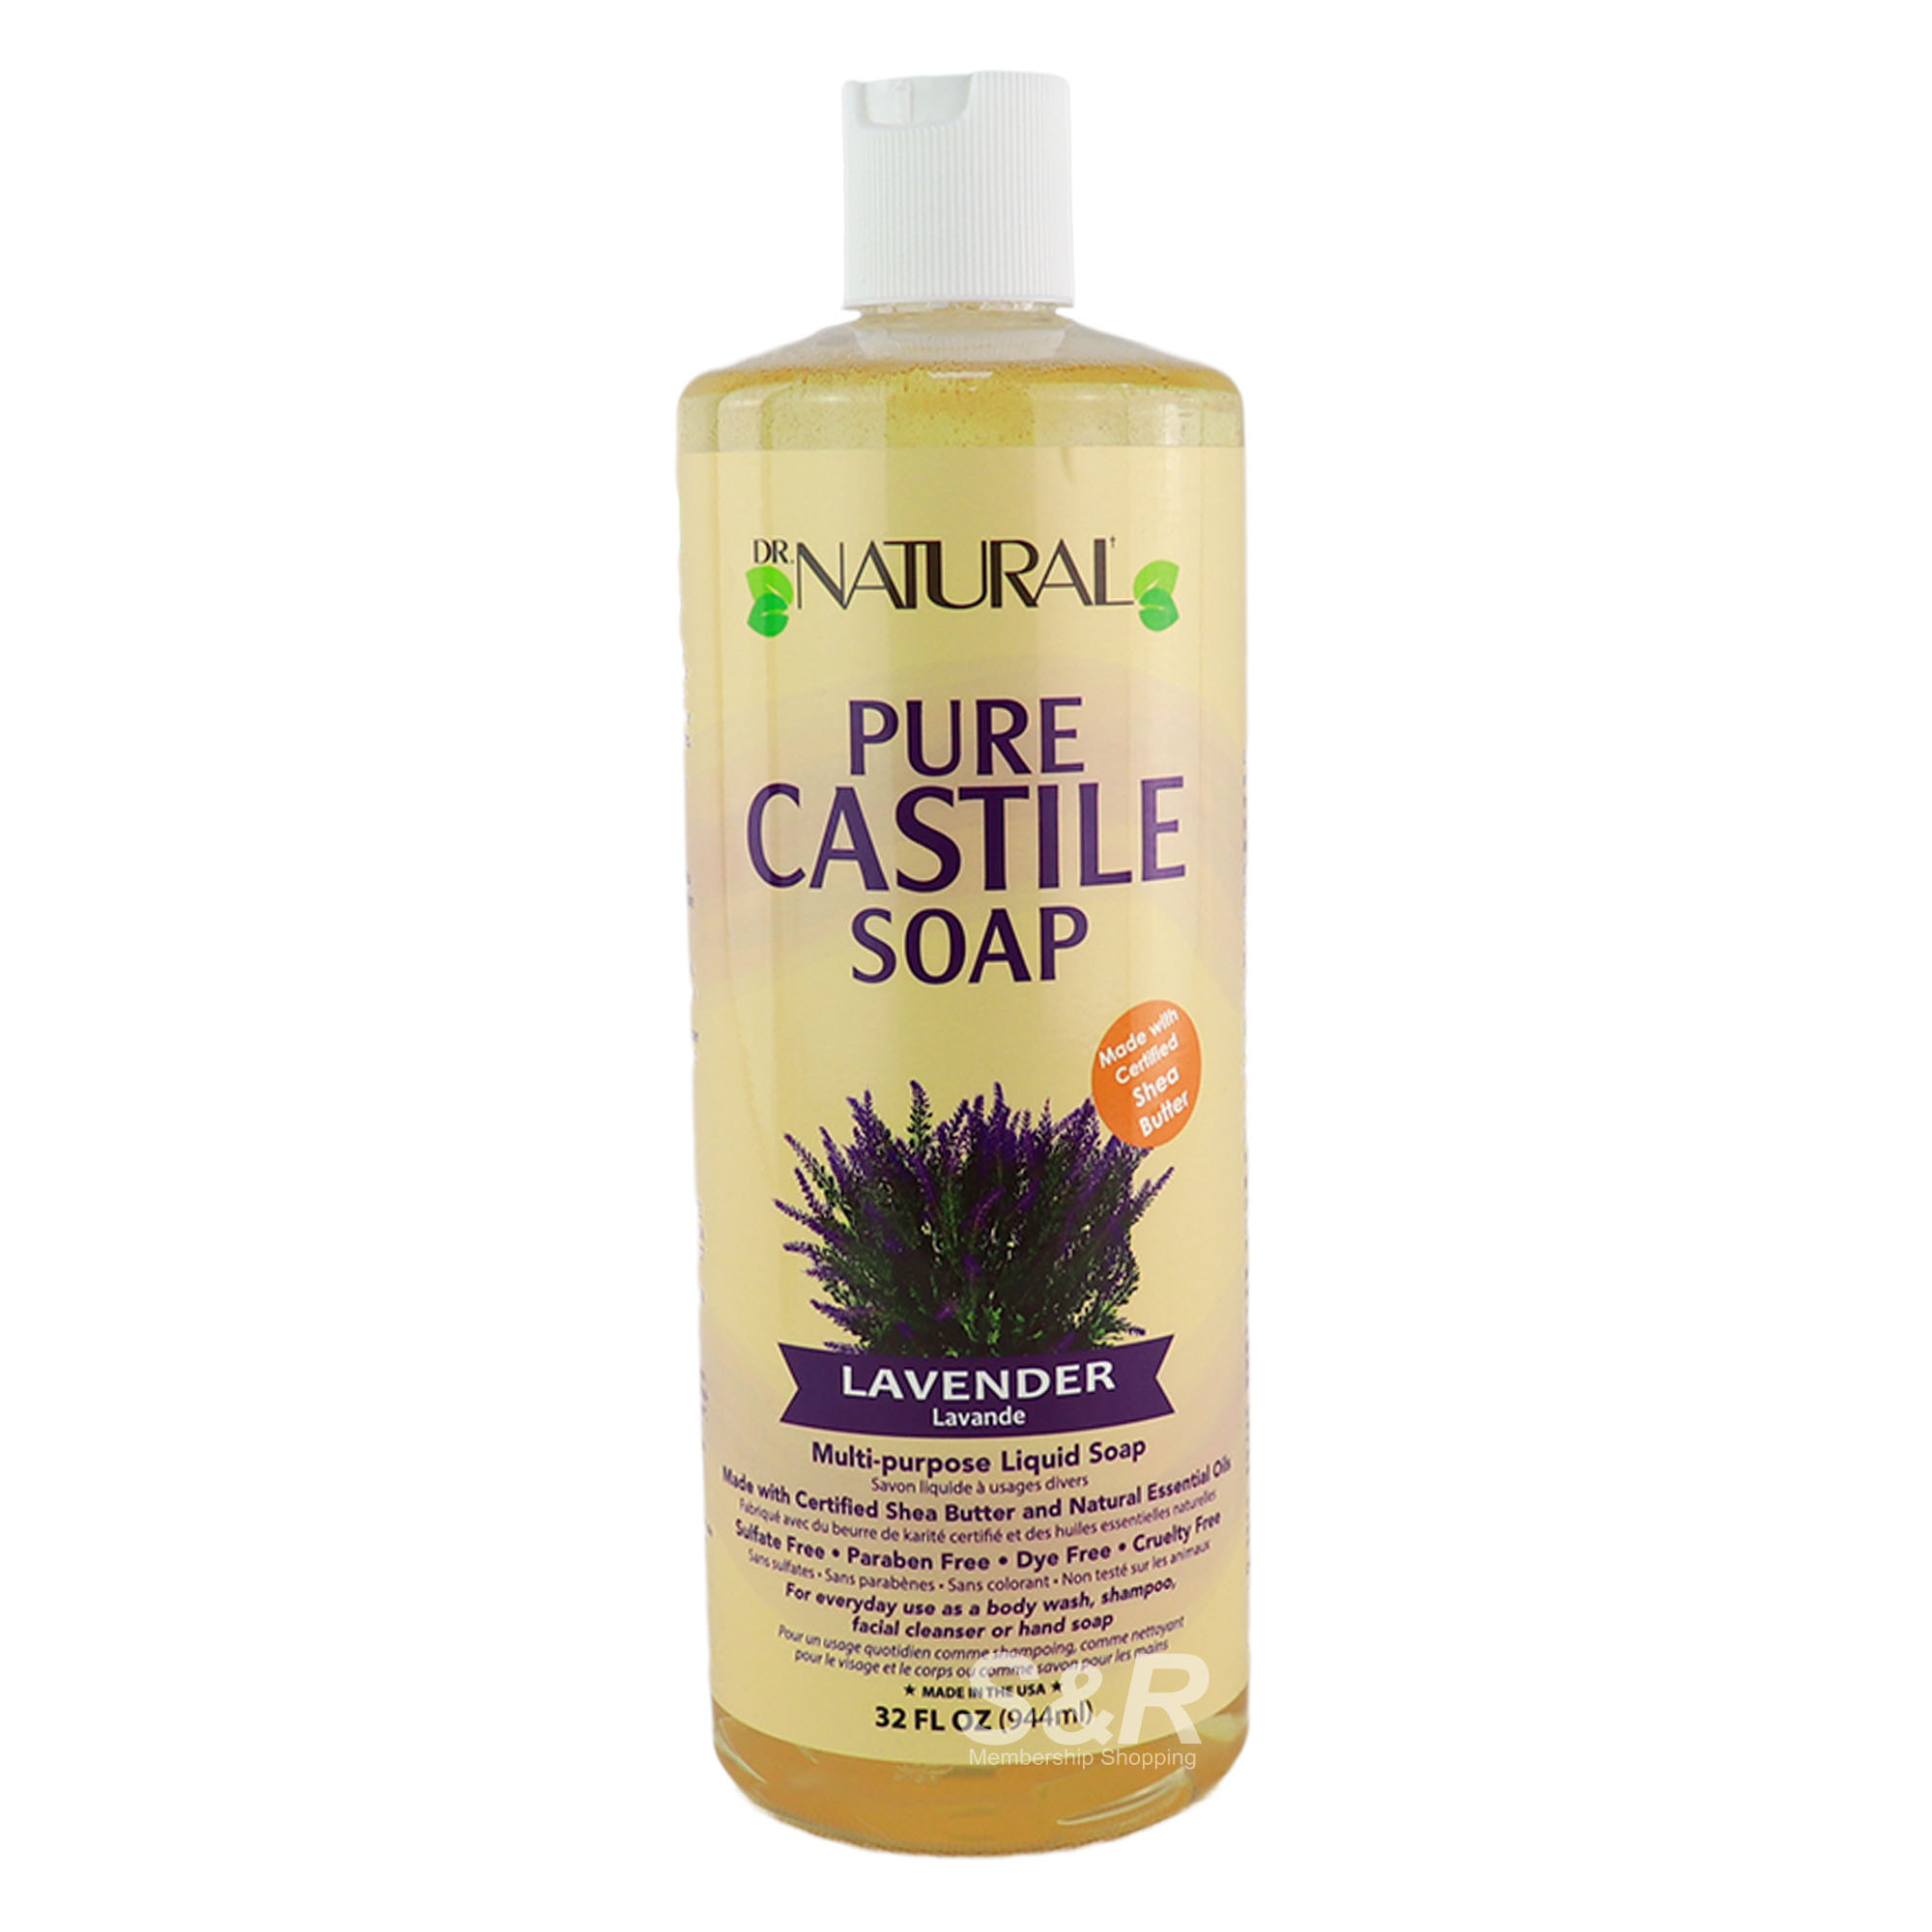 Dr. Natural Pure Castile Soap Lavender Multi-purpose Liquid Soap 944mL